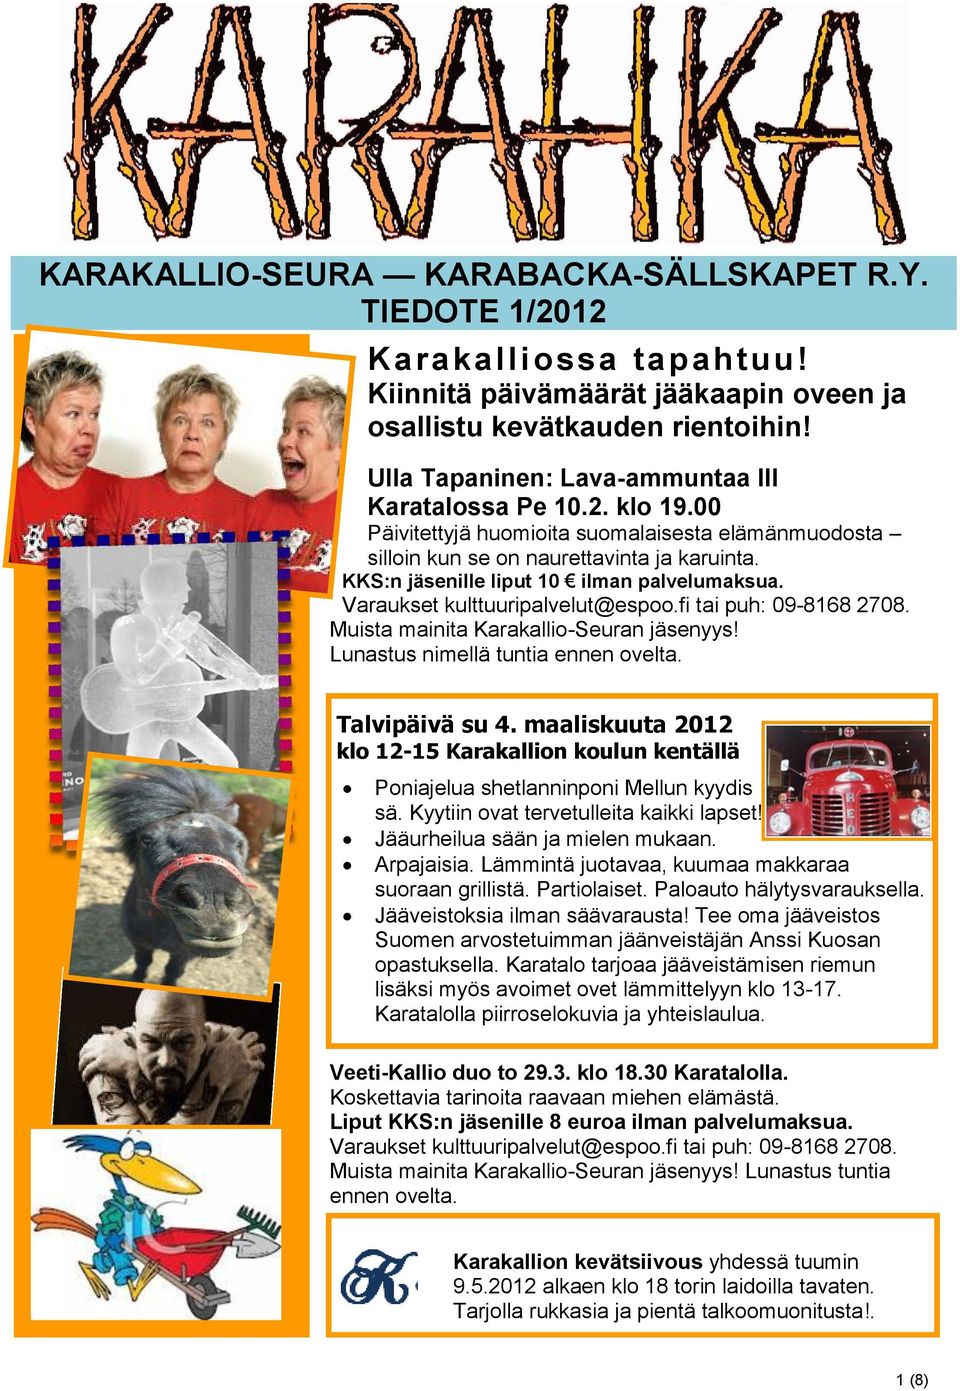 KKS:n jäsenille liput 10 ilman palvelumaksua. Varaukset kulttuuripalvelut@espoo.fi tai puh: 09-8168 2708. Muista mainita Karakallio-Seuran jäsenyys! Lunastus nimellä tuntia ennen ovelta.